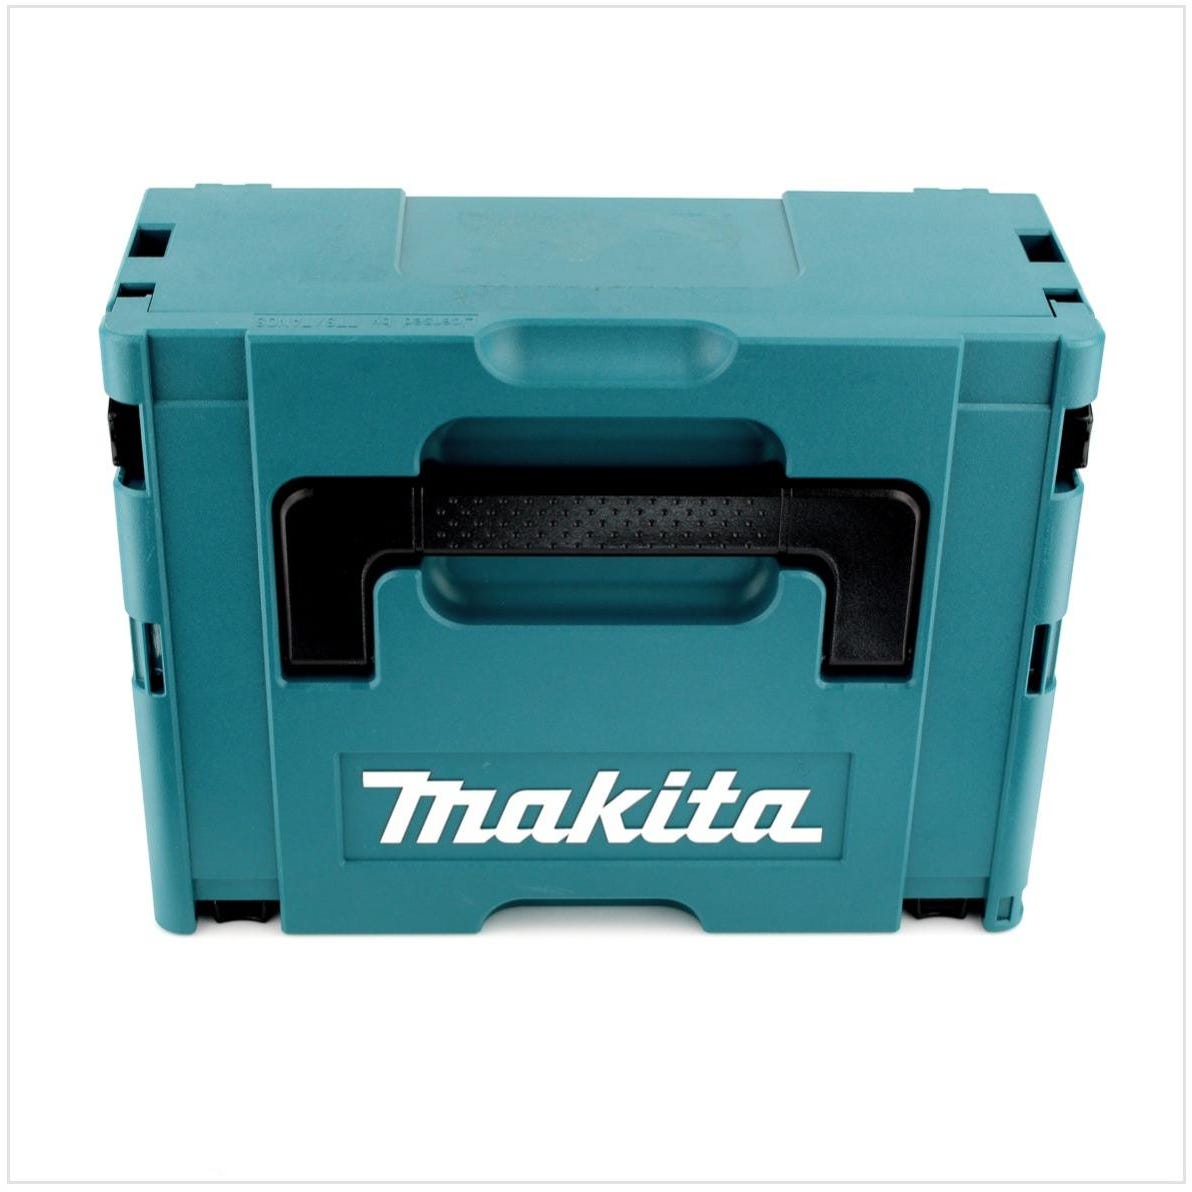 Makita DHP 453 RFJ 18 V Perceuse visseuse à percussion sans fil avec boîtier Makpac + 2x Batteries BL 1830 3,0 Ah + Chargeur DC18RC 2